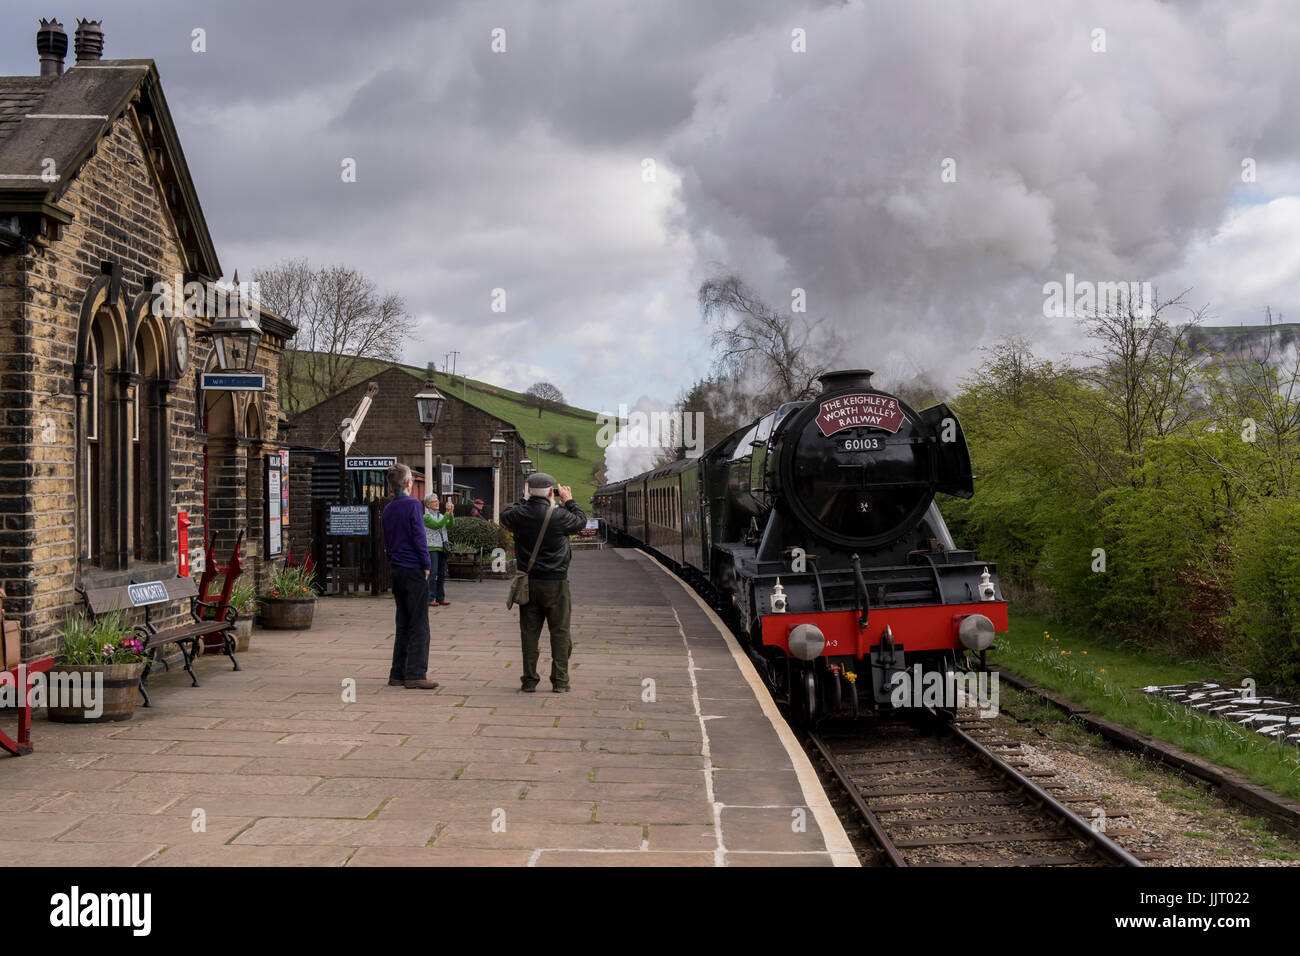 Les gens sur la plate-forme de la gare locomotive à vapeur emblématique montre Flying Scotsman, 60103 moteur soufflant la fumée - Keighley & Worth Valley Railway, FR, UK. Banque D'Images